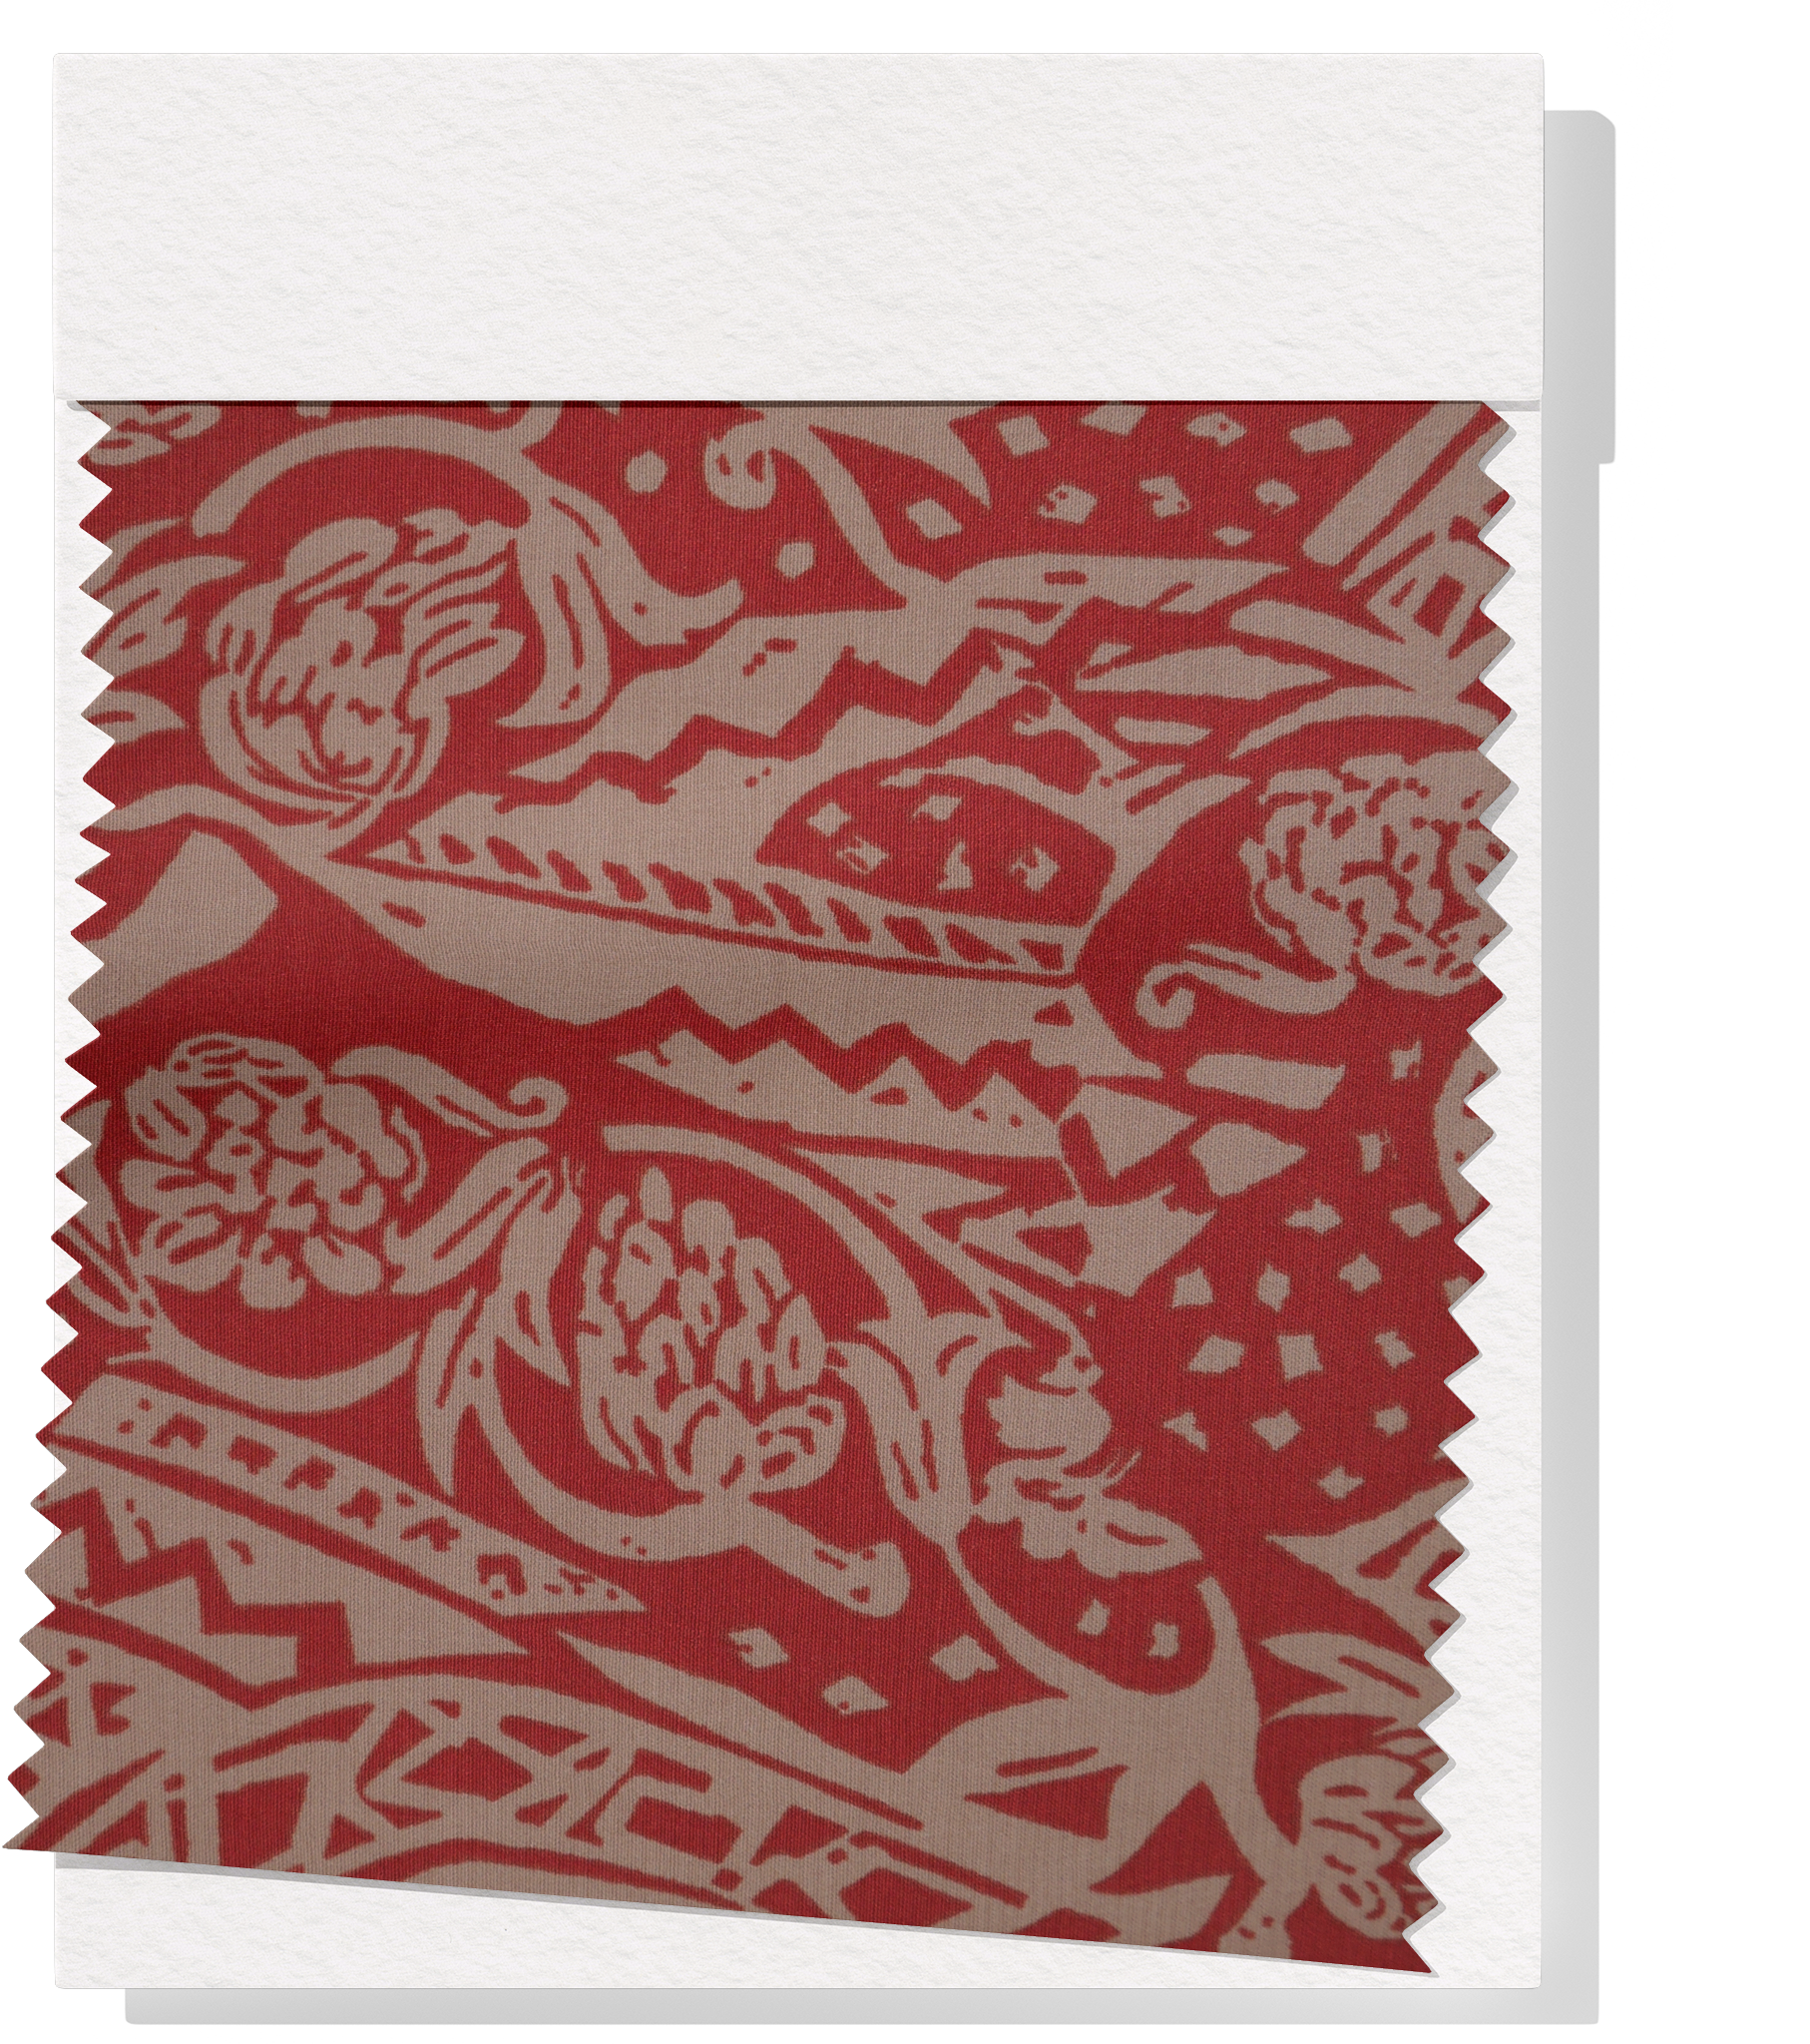 Viscose/ Rayon Crepe Print $22.00p/m - Red & Brown